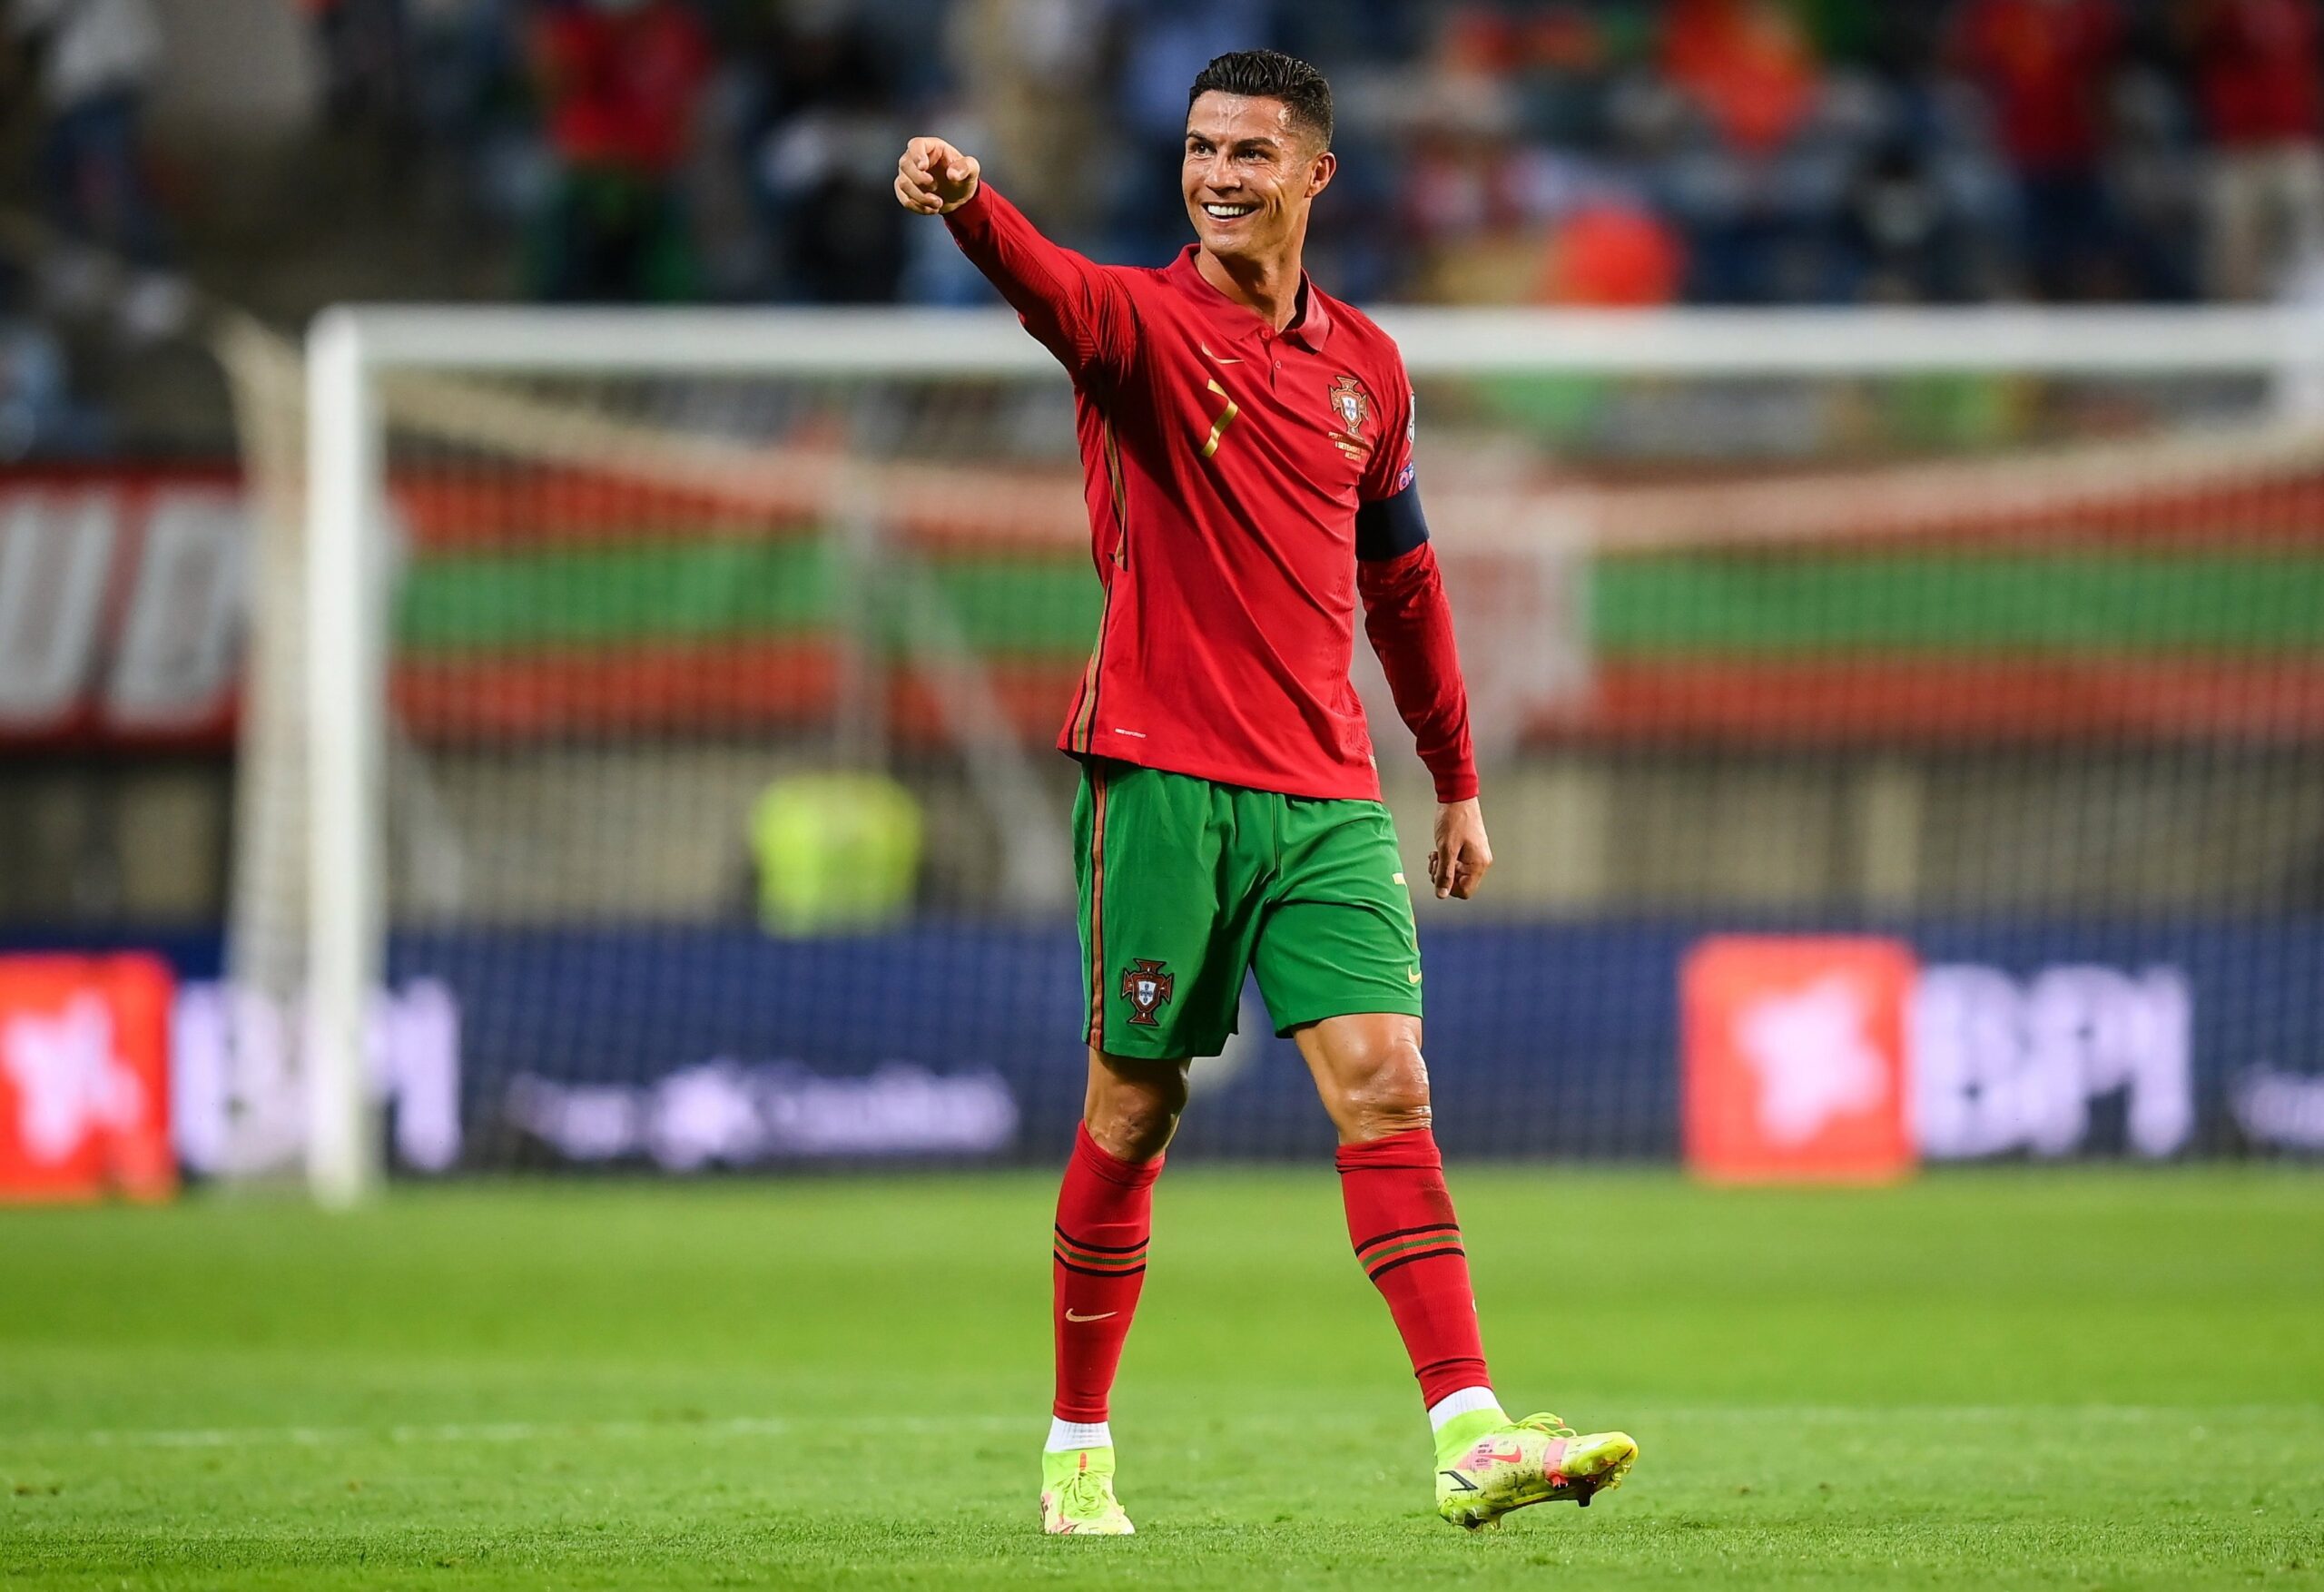 Ronaldo cũng sẽ là mục tiêu của nhiều đội bóng lớn tại thị trường chuyển nhượng sau mùa World Cup 2022